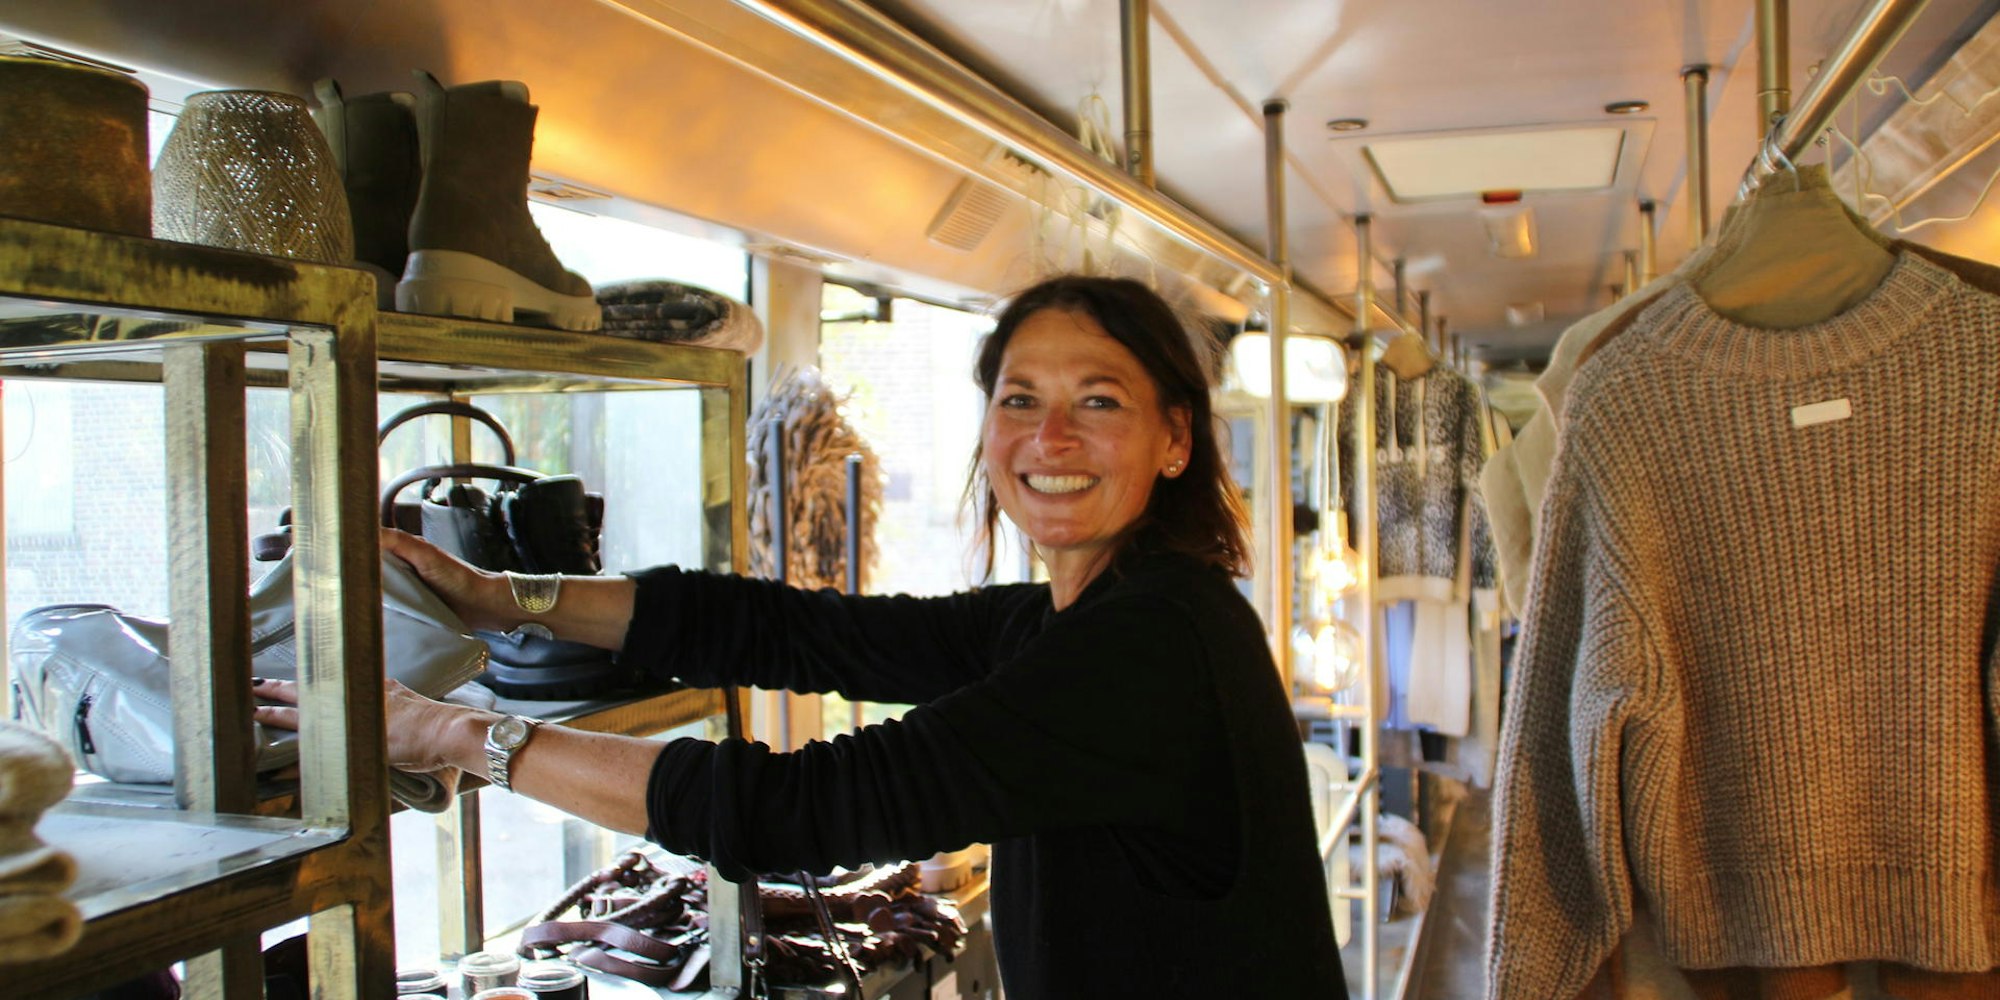 Regale statt Sitzplätze: Miriam Nölkensmeier hat ihren Concept Store „Bottega“ in einen ehemaligen Schulbus verlagert.